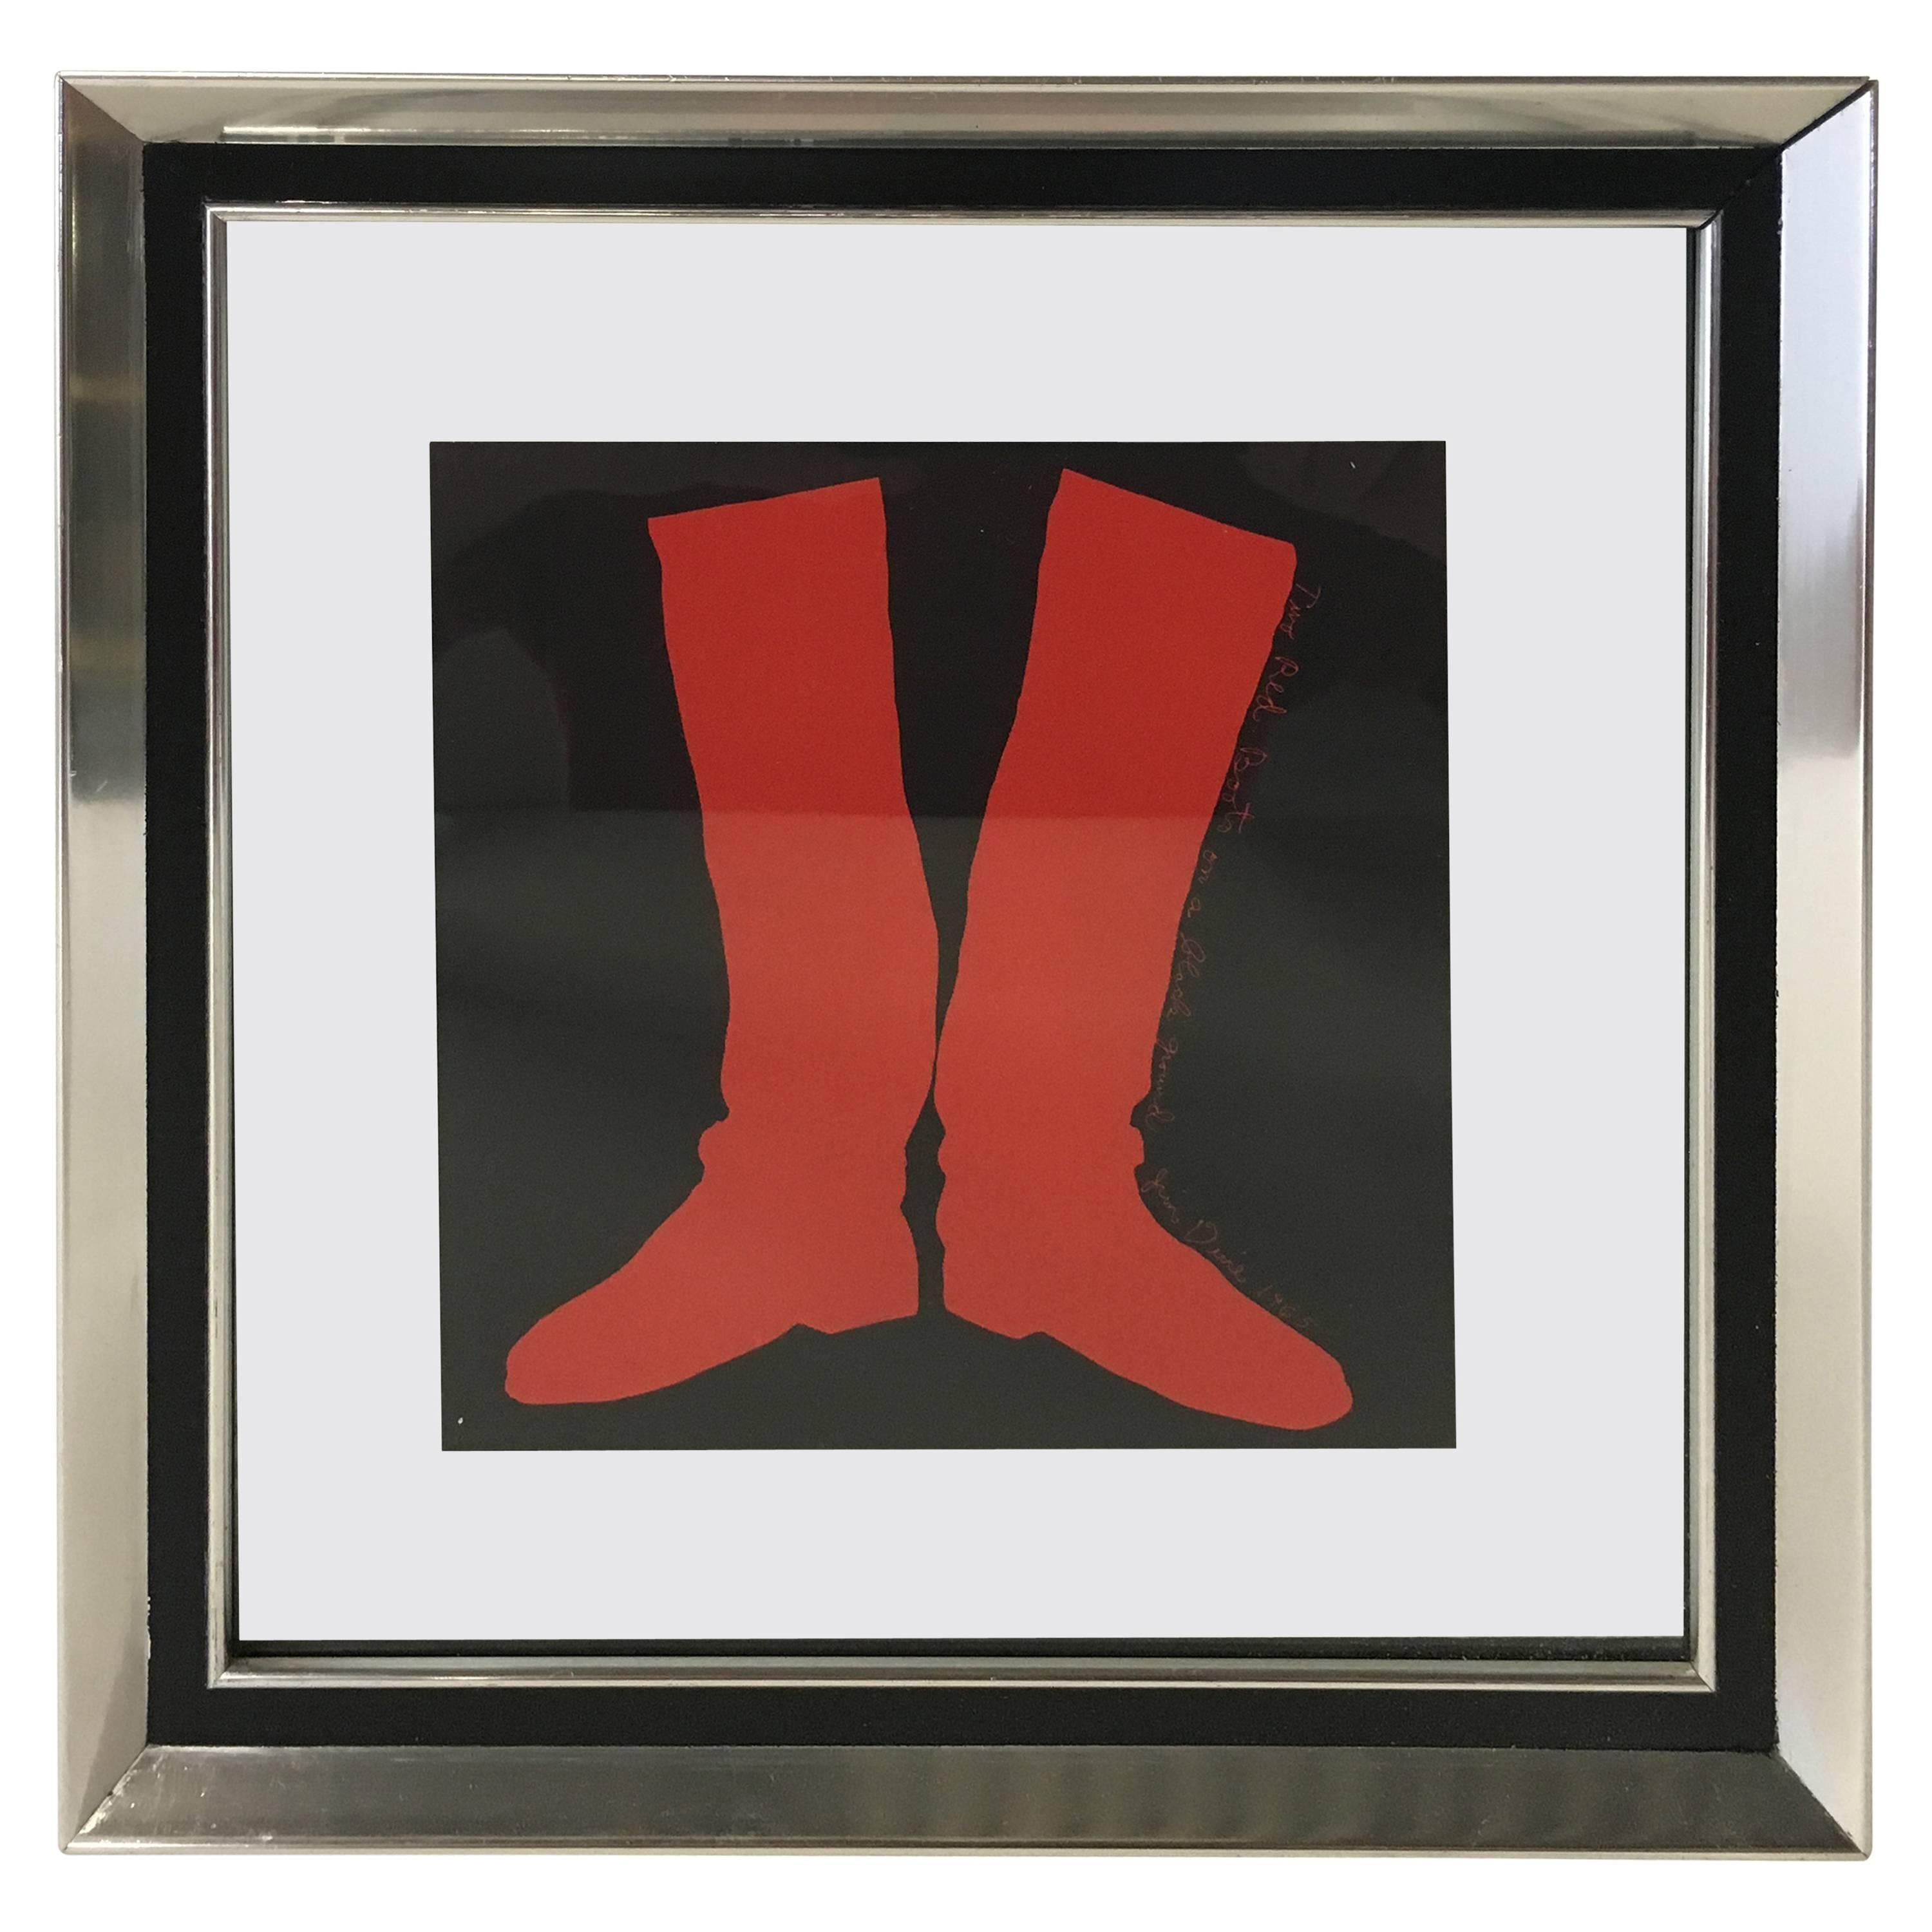 Jim Dine "Two Boots" Silkscreen, 1968